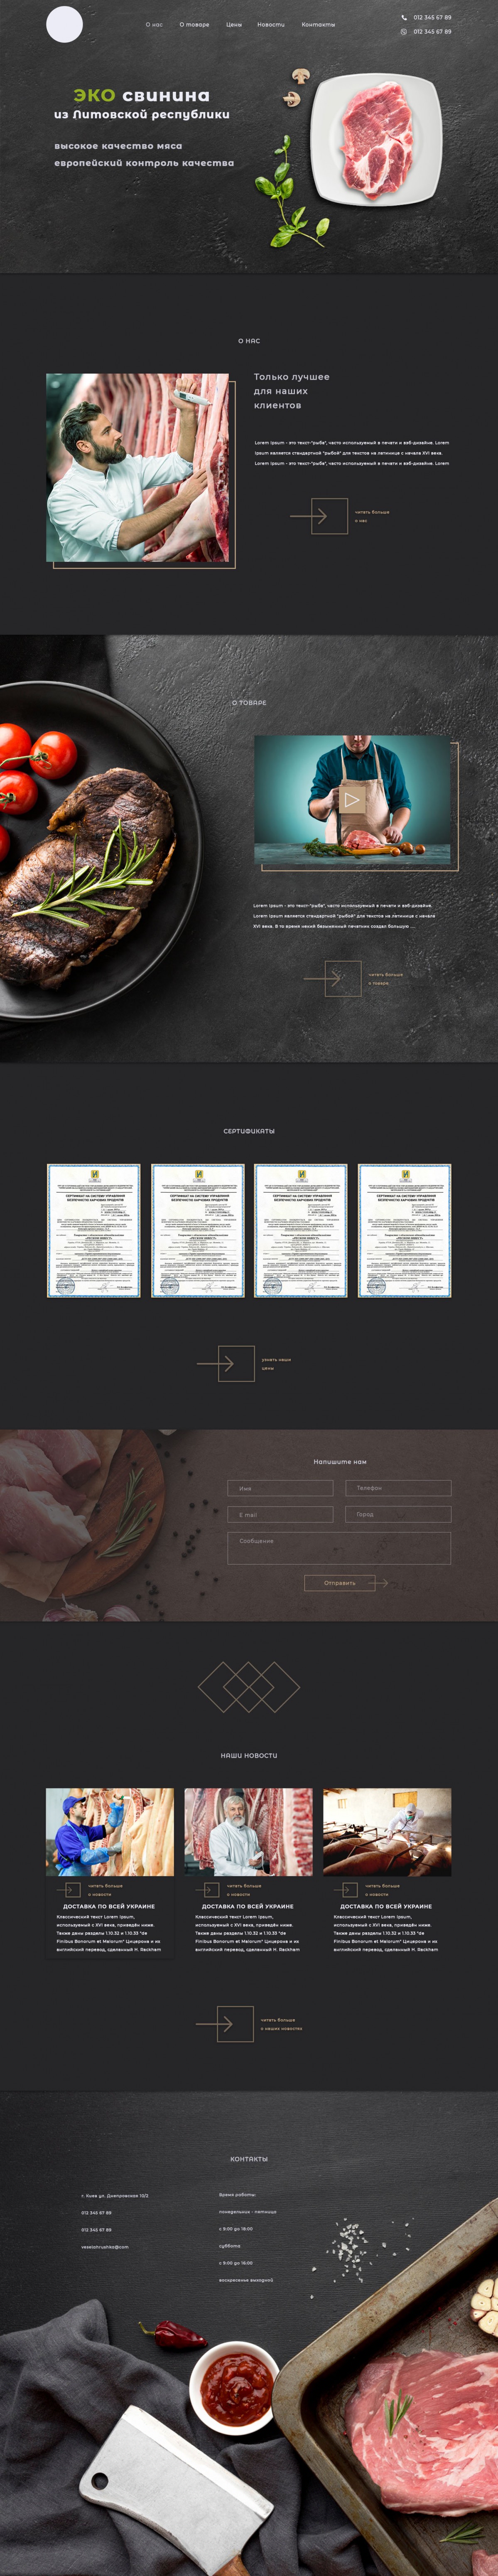 Макет лендинга и его страниц для продажи мяса через интернет